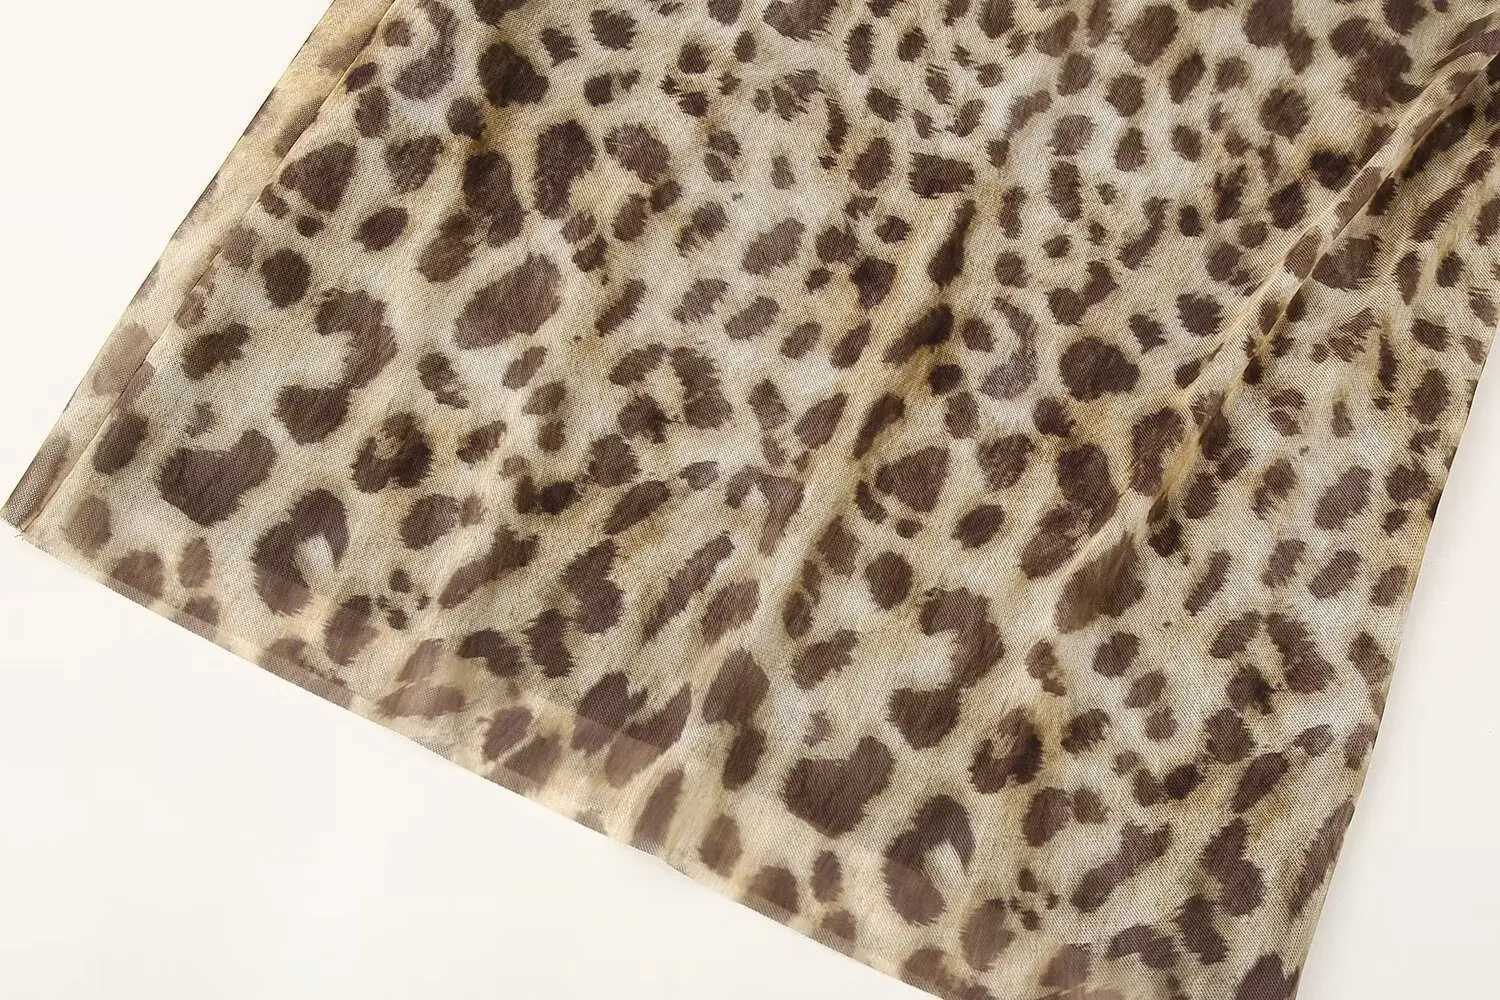 Röcke Traf Leopardenmuster Tüllröcke für Frauen hoher Taille Langer Rock Frauen Sommer Beach Frauen Röcke Streetwear Straße Midi Rock Q240507